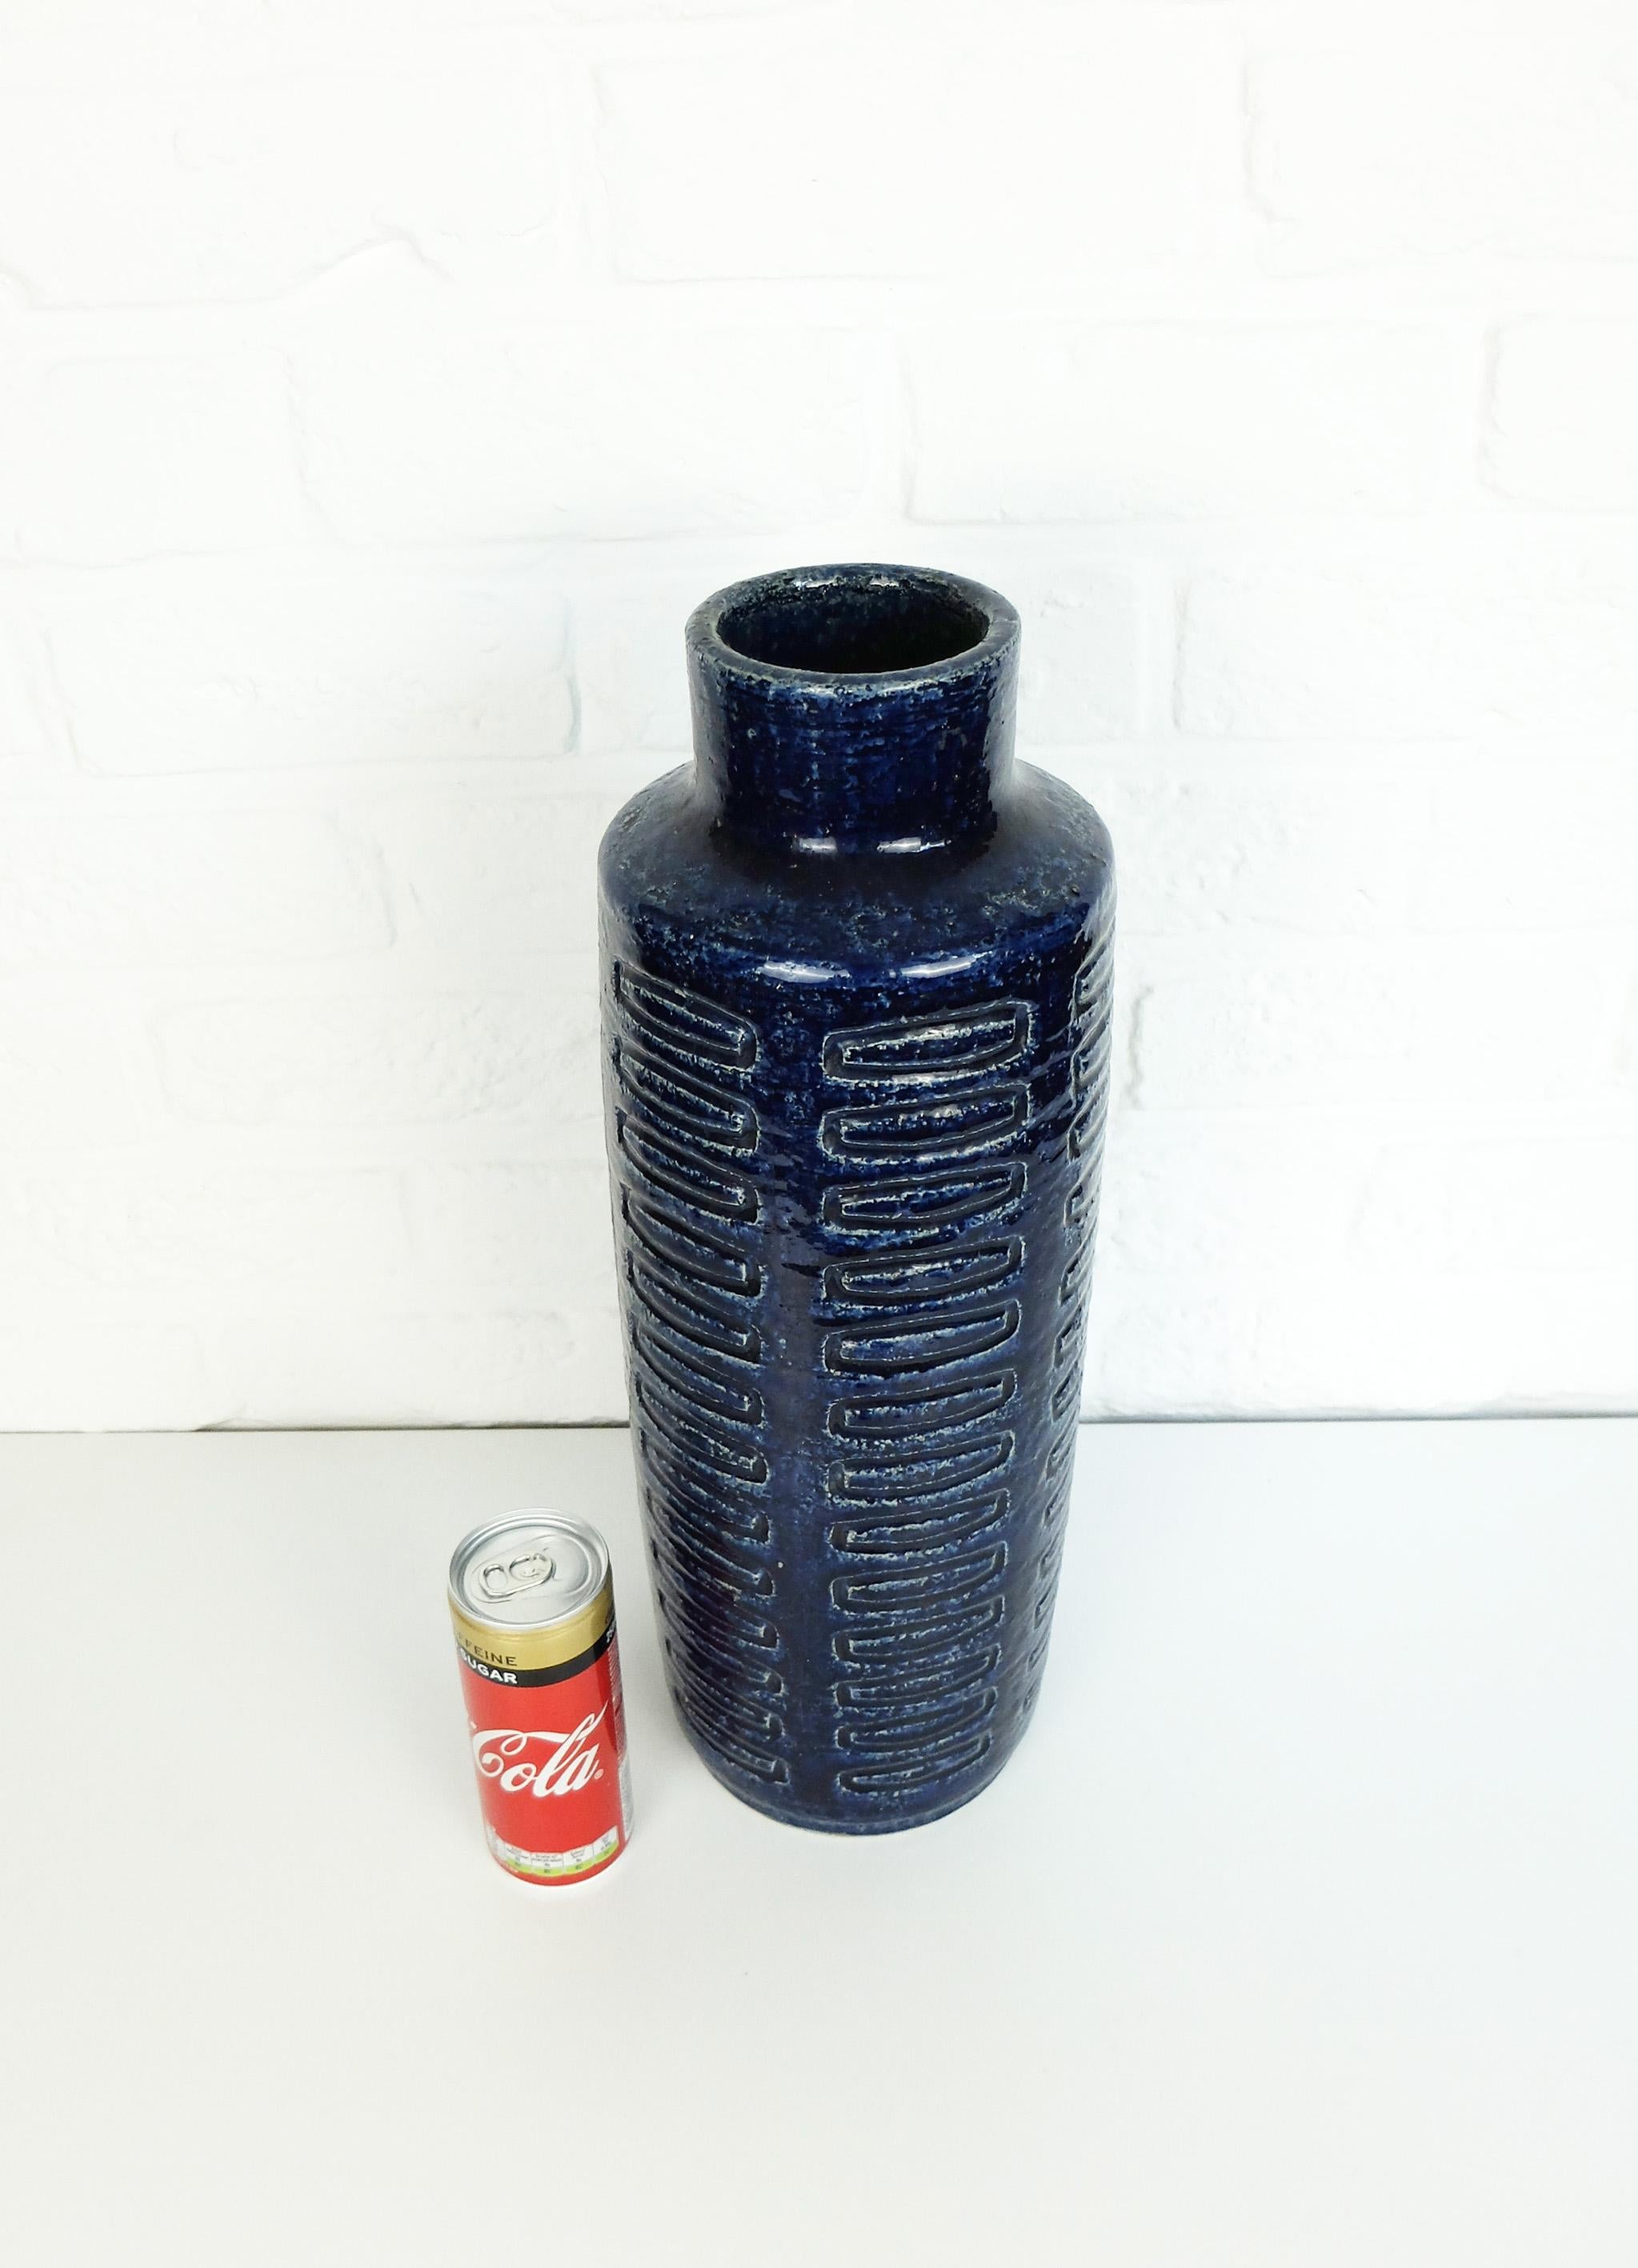 Tall Scandinavian Cobalt Blue Ceramic Vase C15 by Linnemann-Schmidt for Palshus For Sale 4